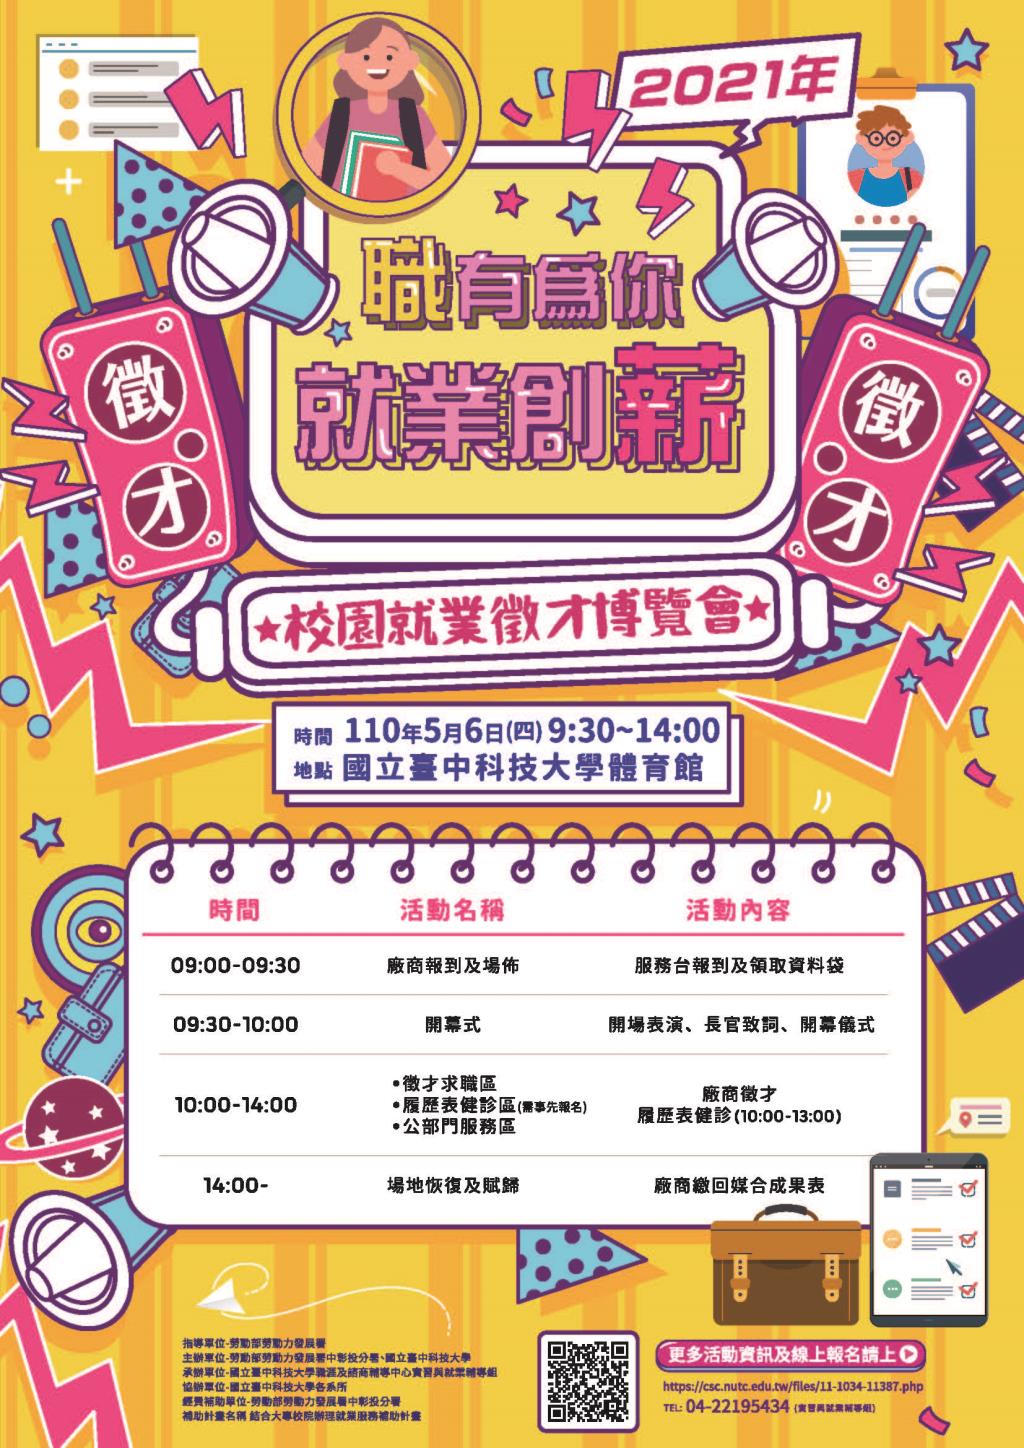 國立臺中科技大學於110年5月6日(星期四)辦理「2021校園就業徵 才博覽會活動」